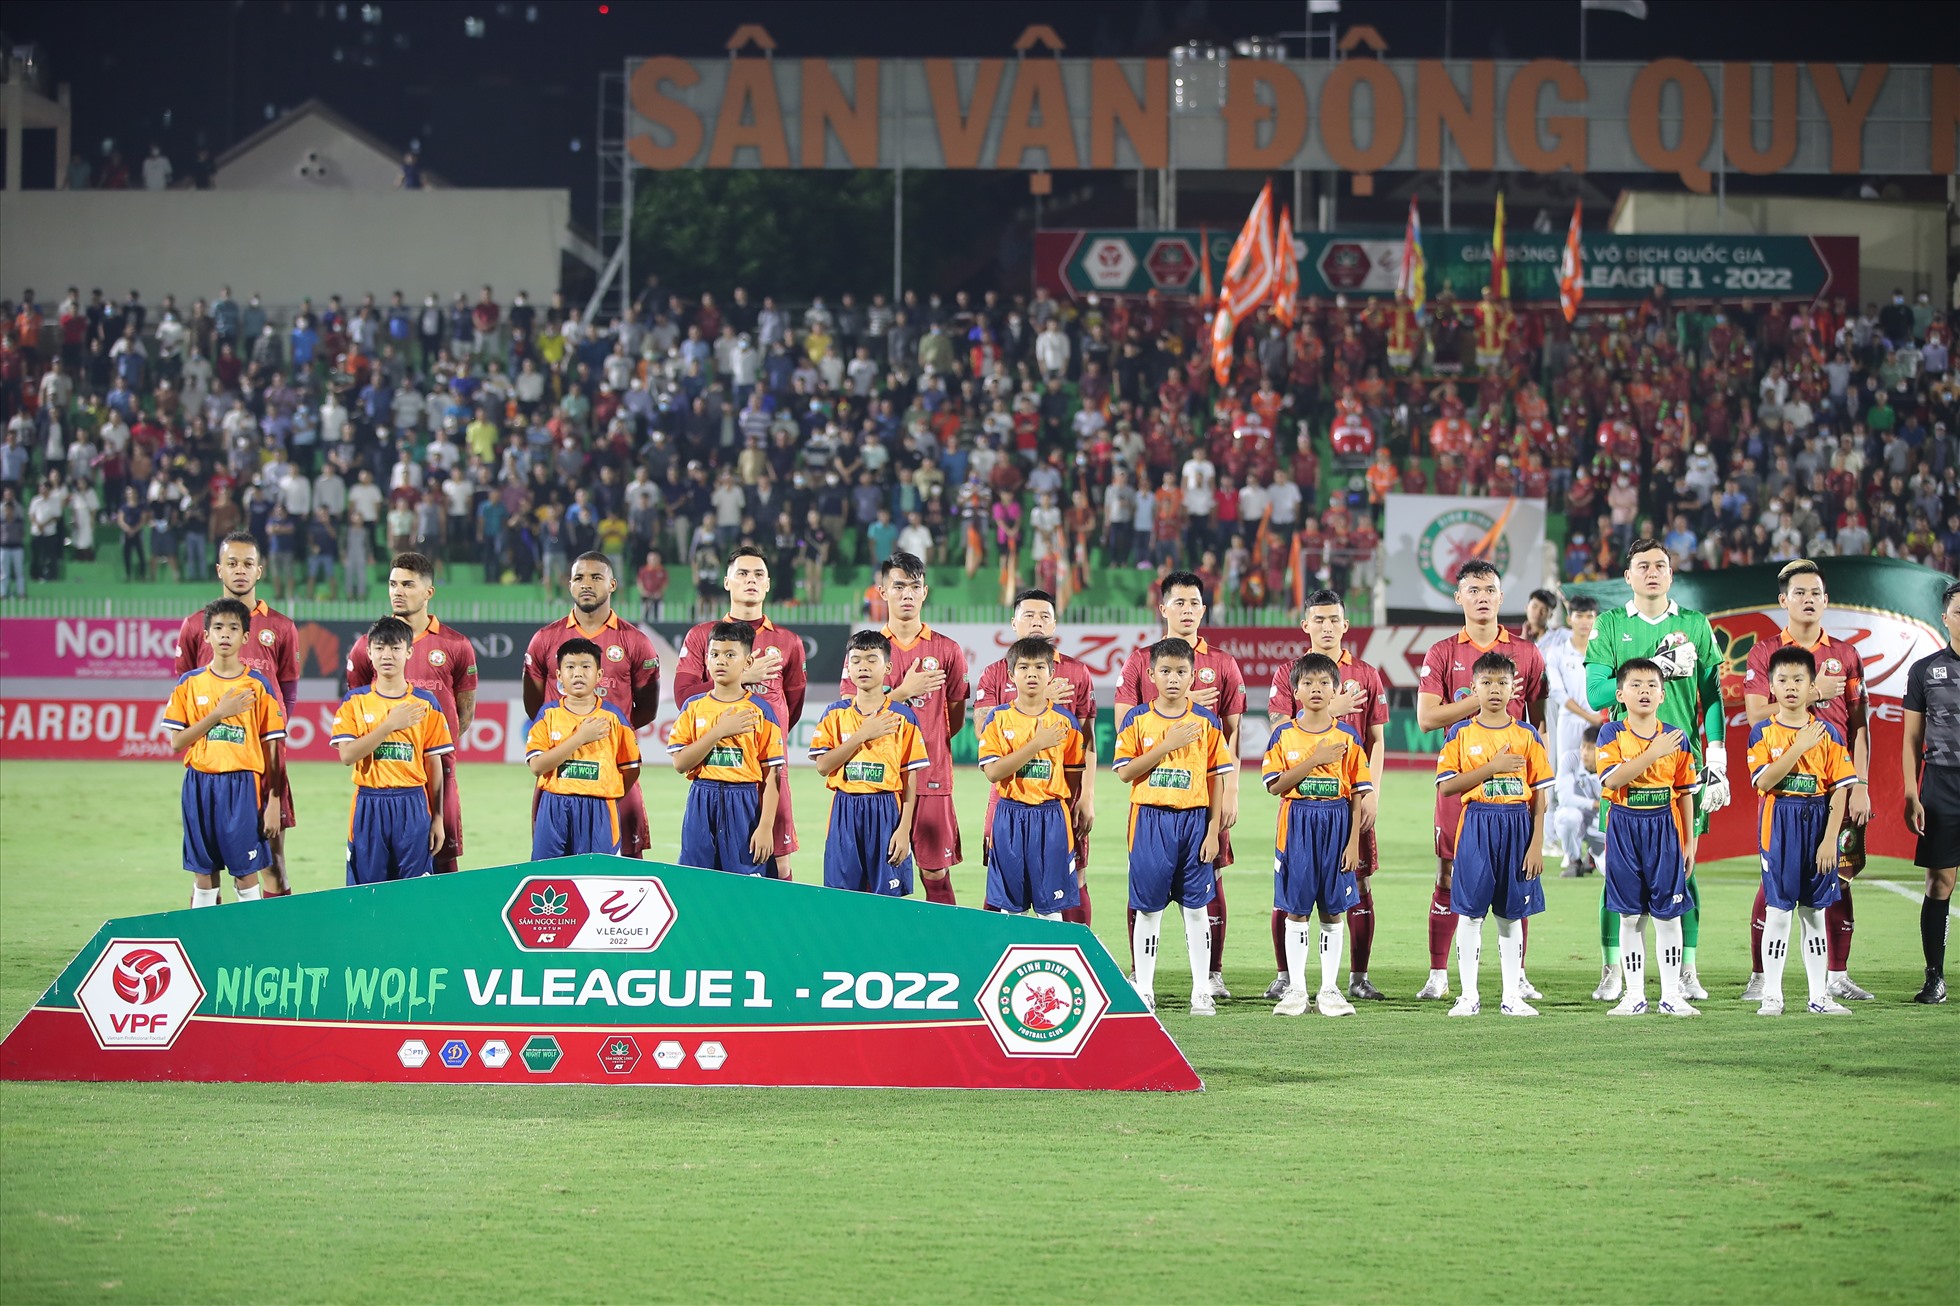 Tối 18.10, Bình Định có trận tiếp đón Hồng Lĩnh Hà Tĩnh trên sân nhà Quy Nhơn ở lượt trận vòng 20 Night Wolf V.League 2022.